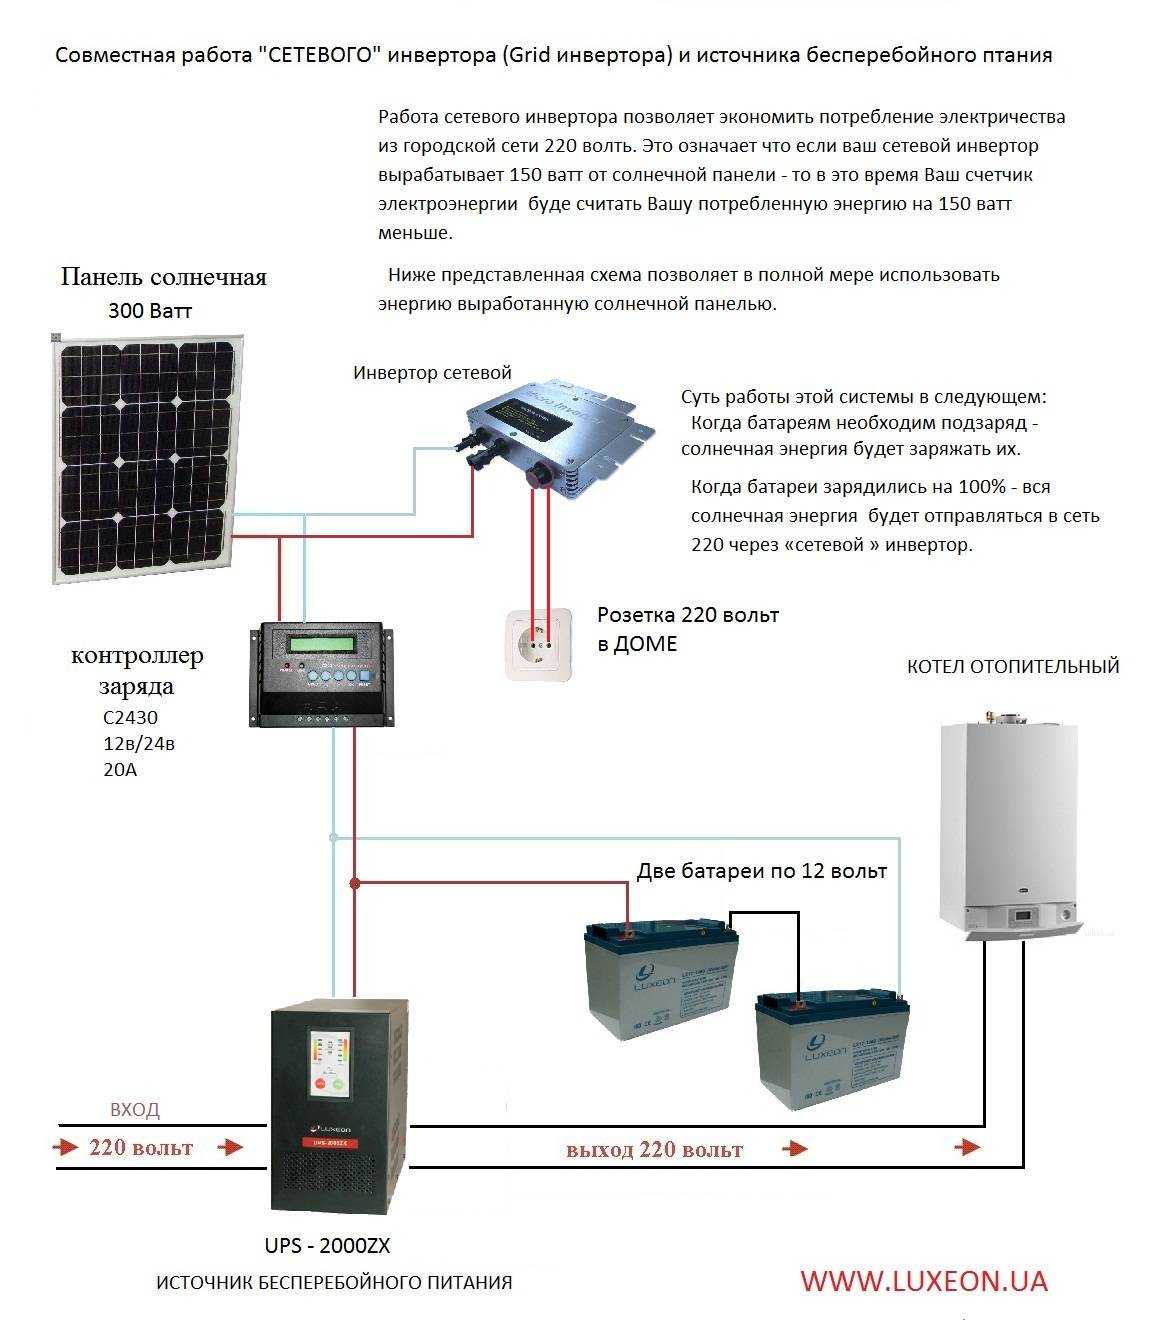 Схема подключения солнечных панелей к аккумулятору, контроллеру и инвертору